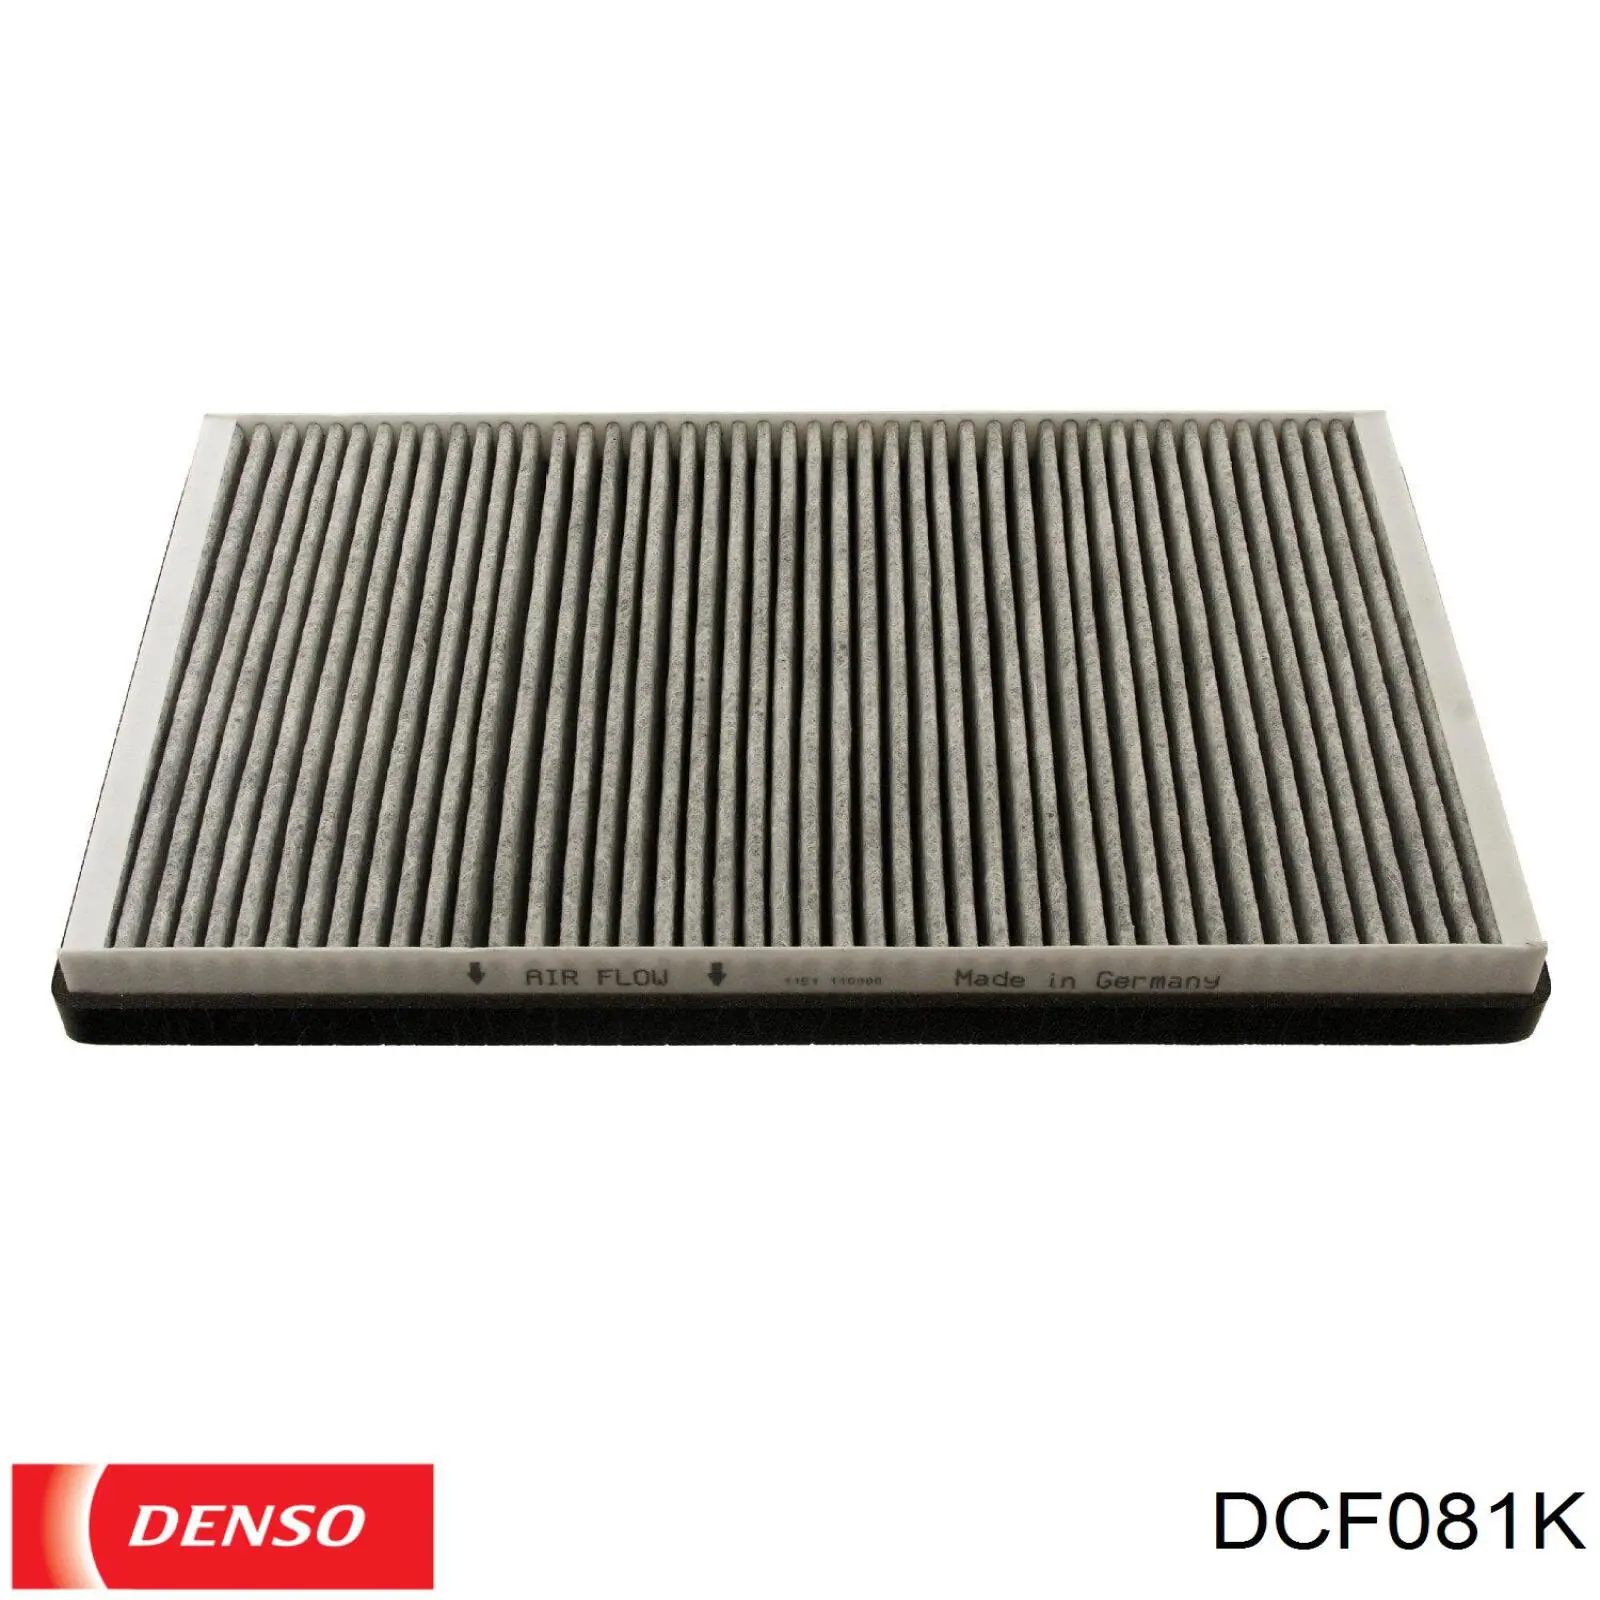 DCF081K Denso filtro habitáculo